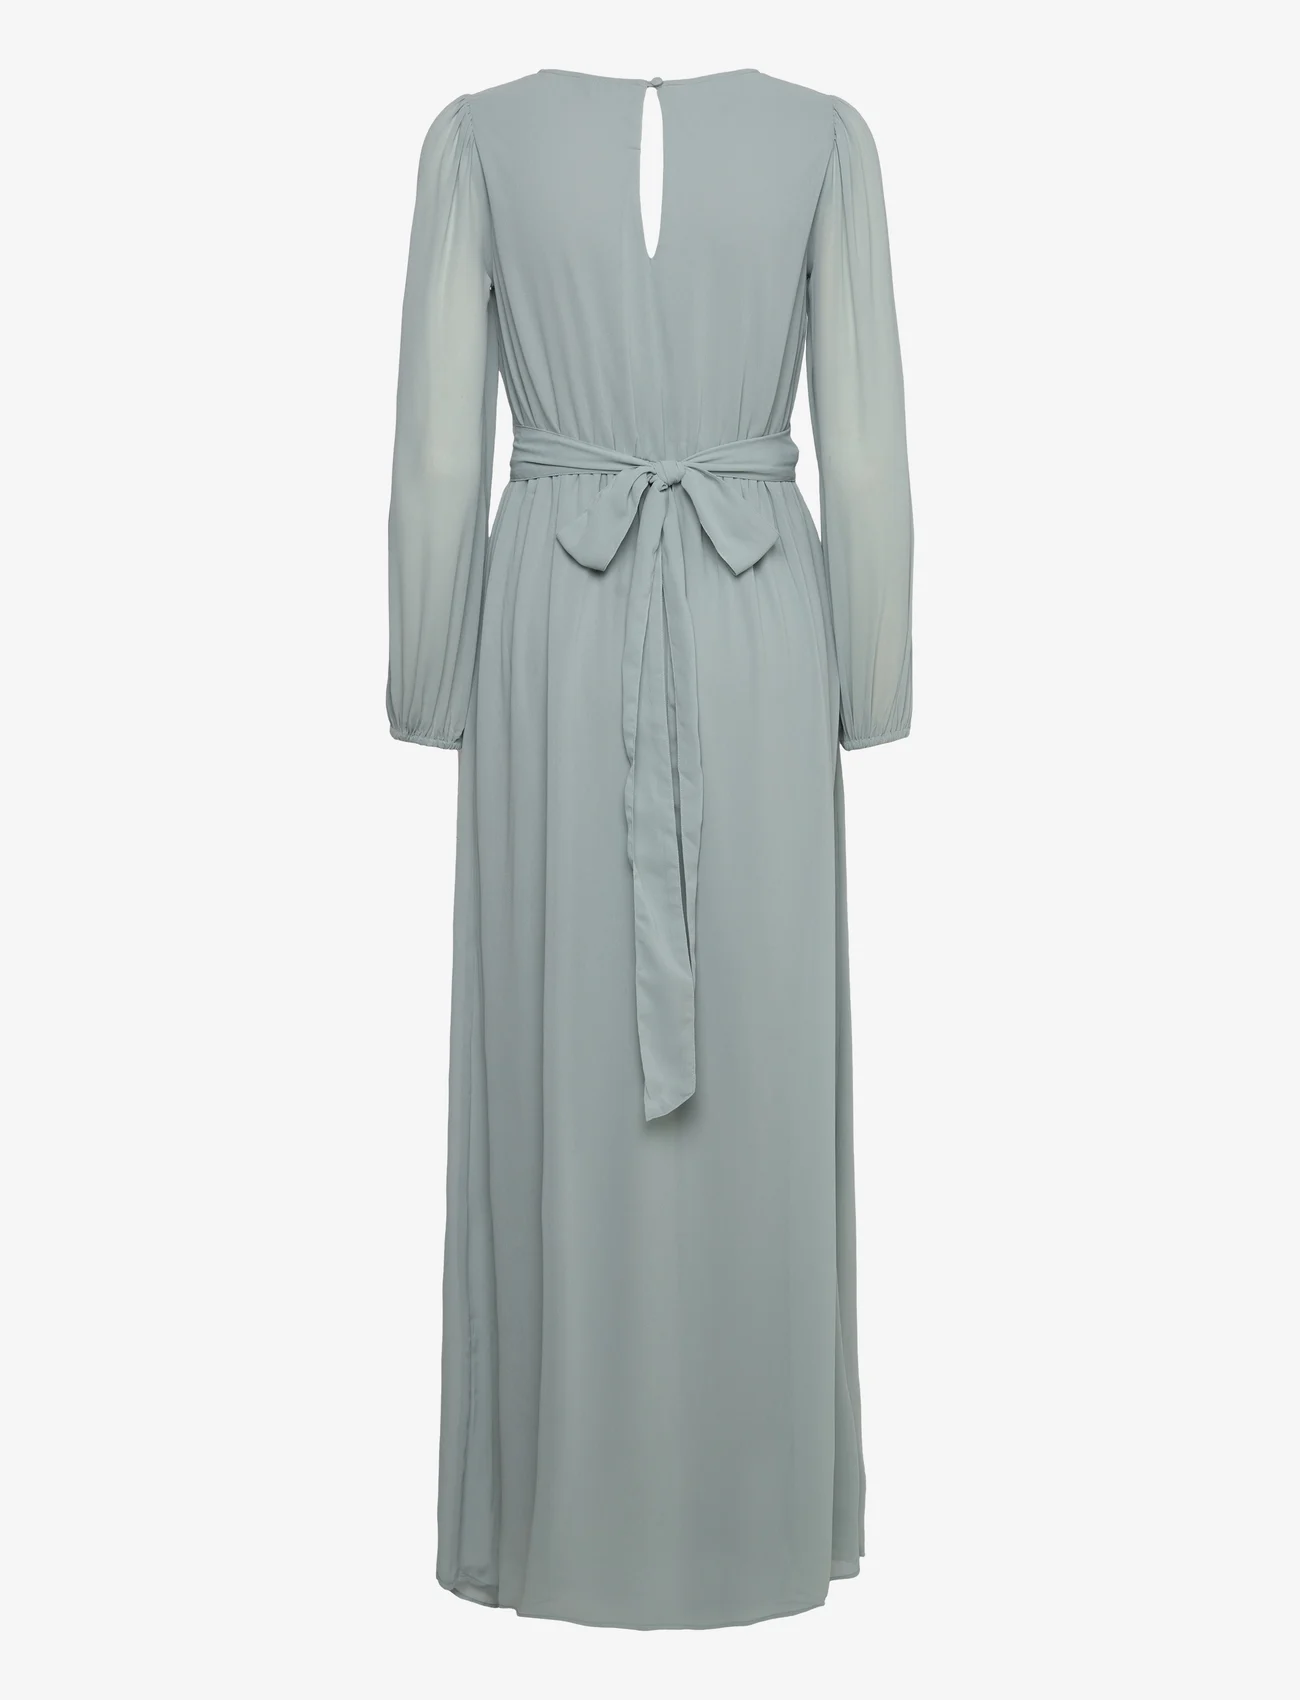 Bubbleroom - Isobel Long sleeve Gown - odzież imprezowa w cenach outletowych - dusty green - 1